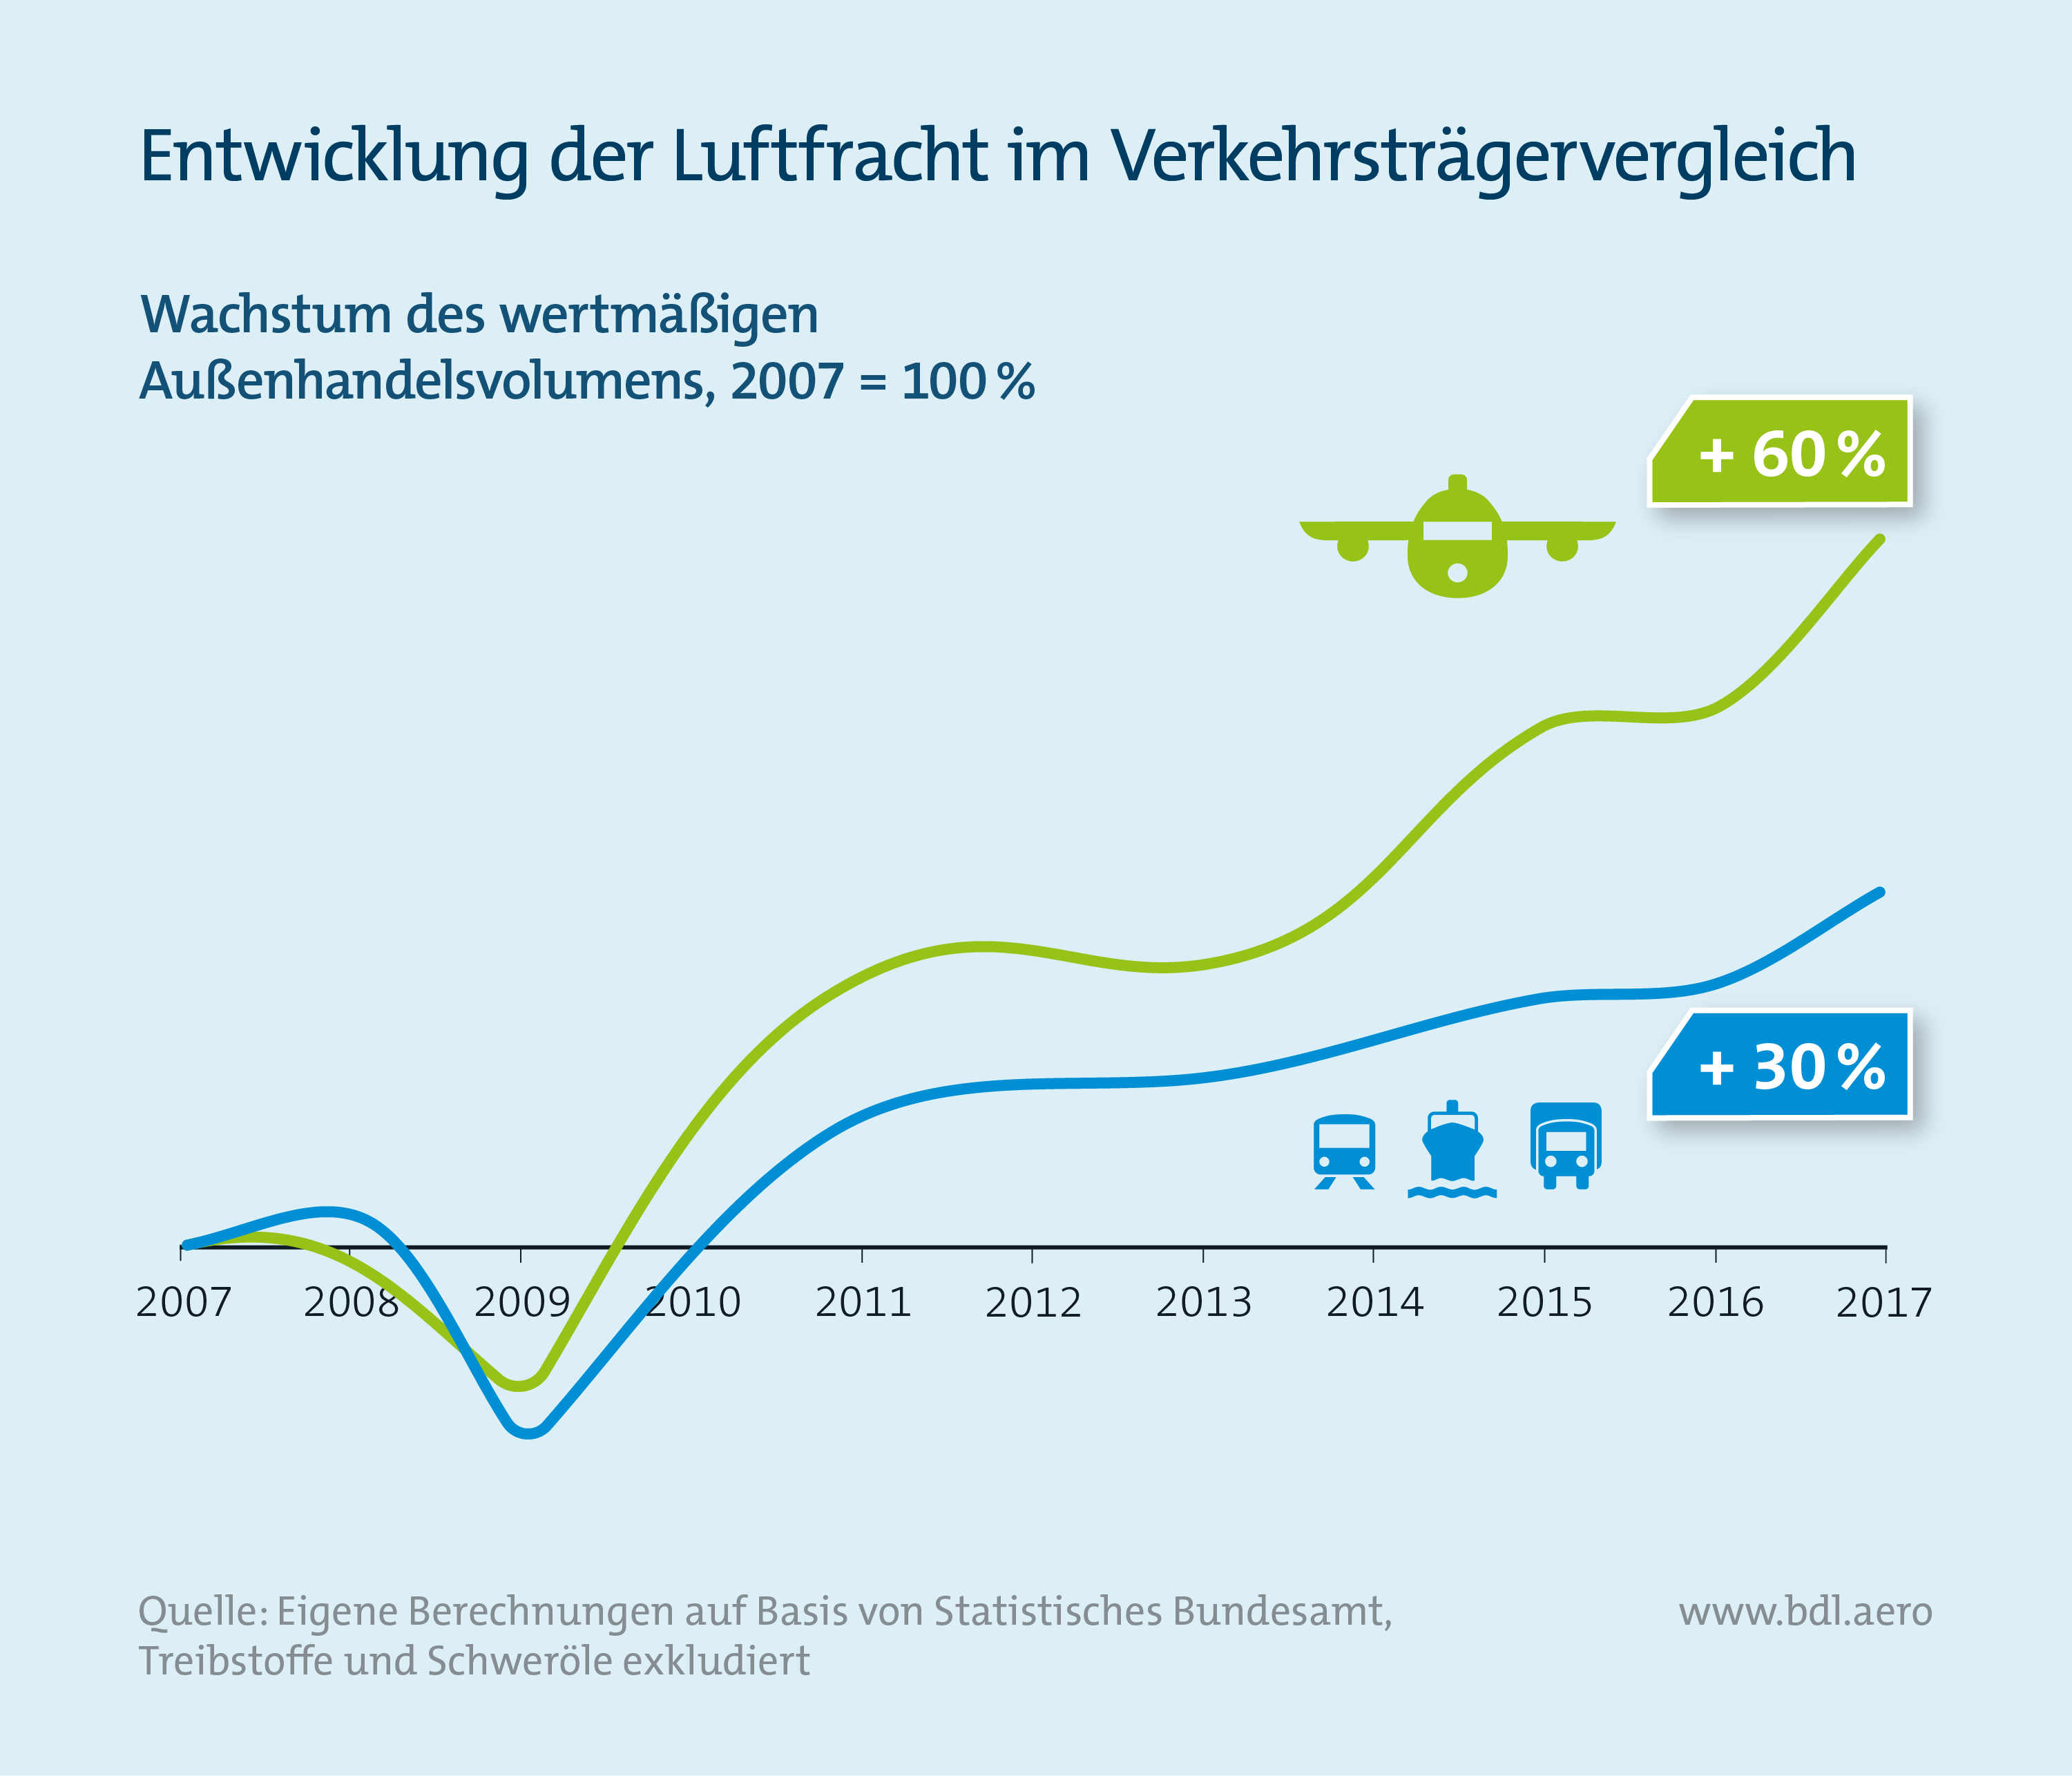 Report Luftfahrt und Wirtschaft: Entwicklung der Luftfracht im Verkehrsträgervergleich